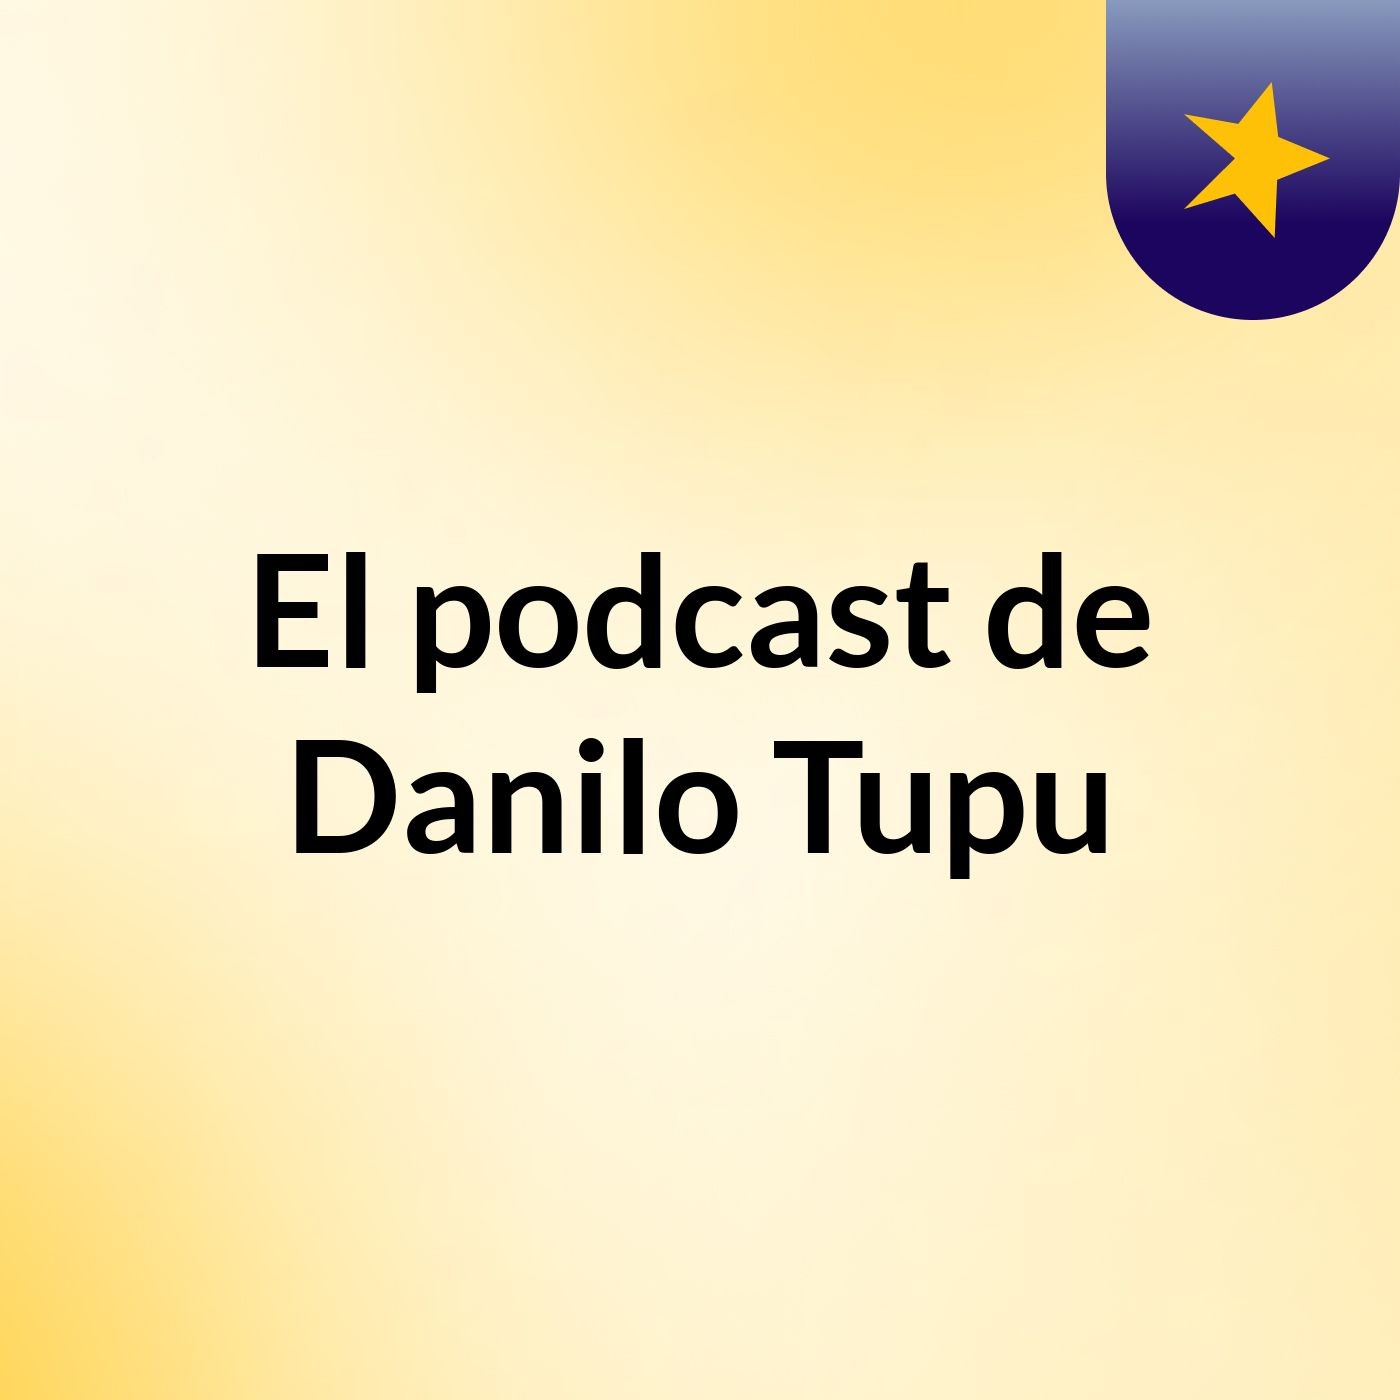 Episodio 16 - El podcast de Danilo Tupu